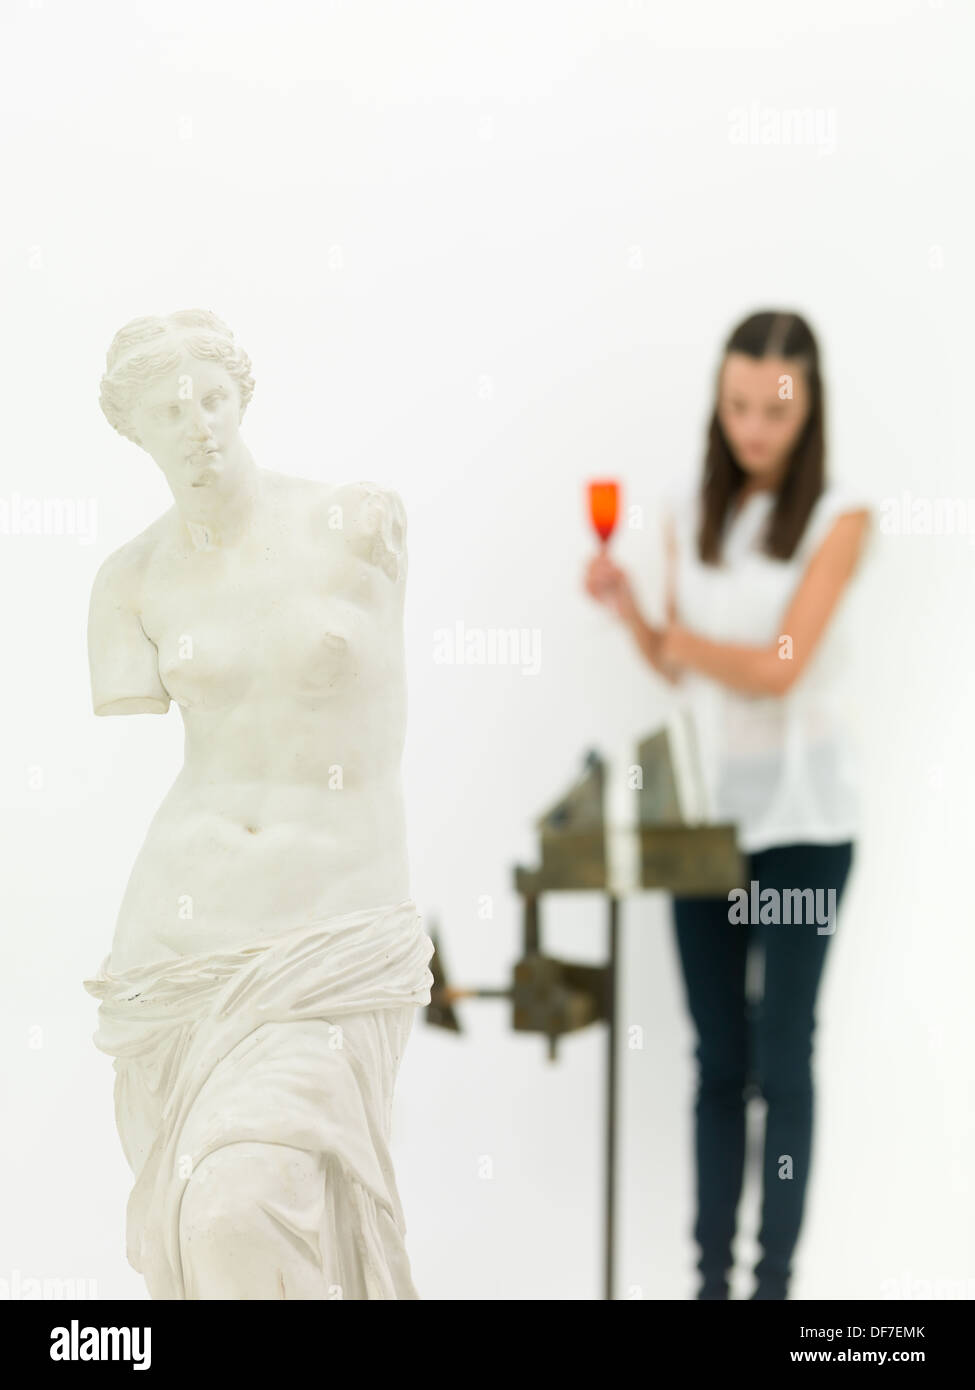 Portrait de réplique de la Vénus de Milo statue d'une femme regardant une œuvre d'arrière-plan flou Banque D'Images